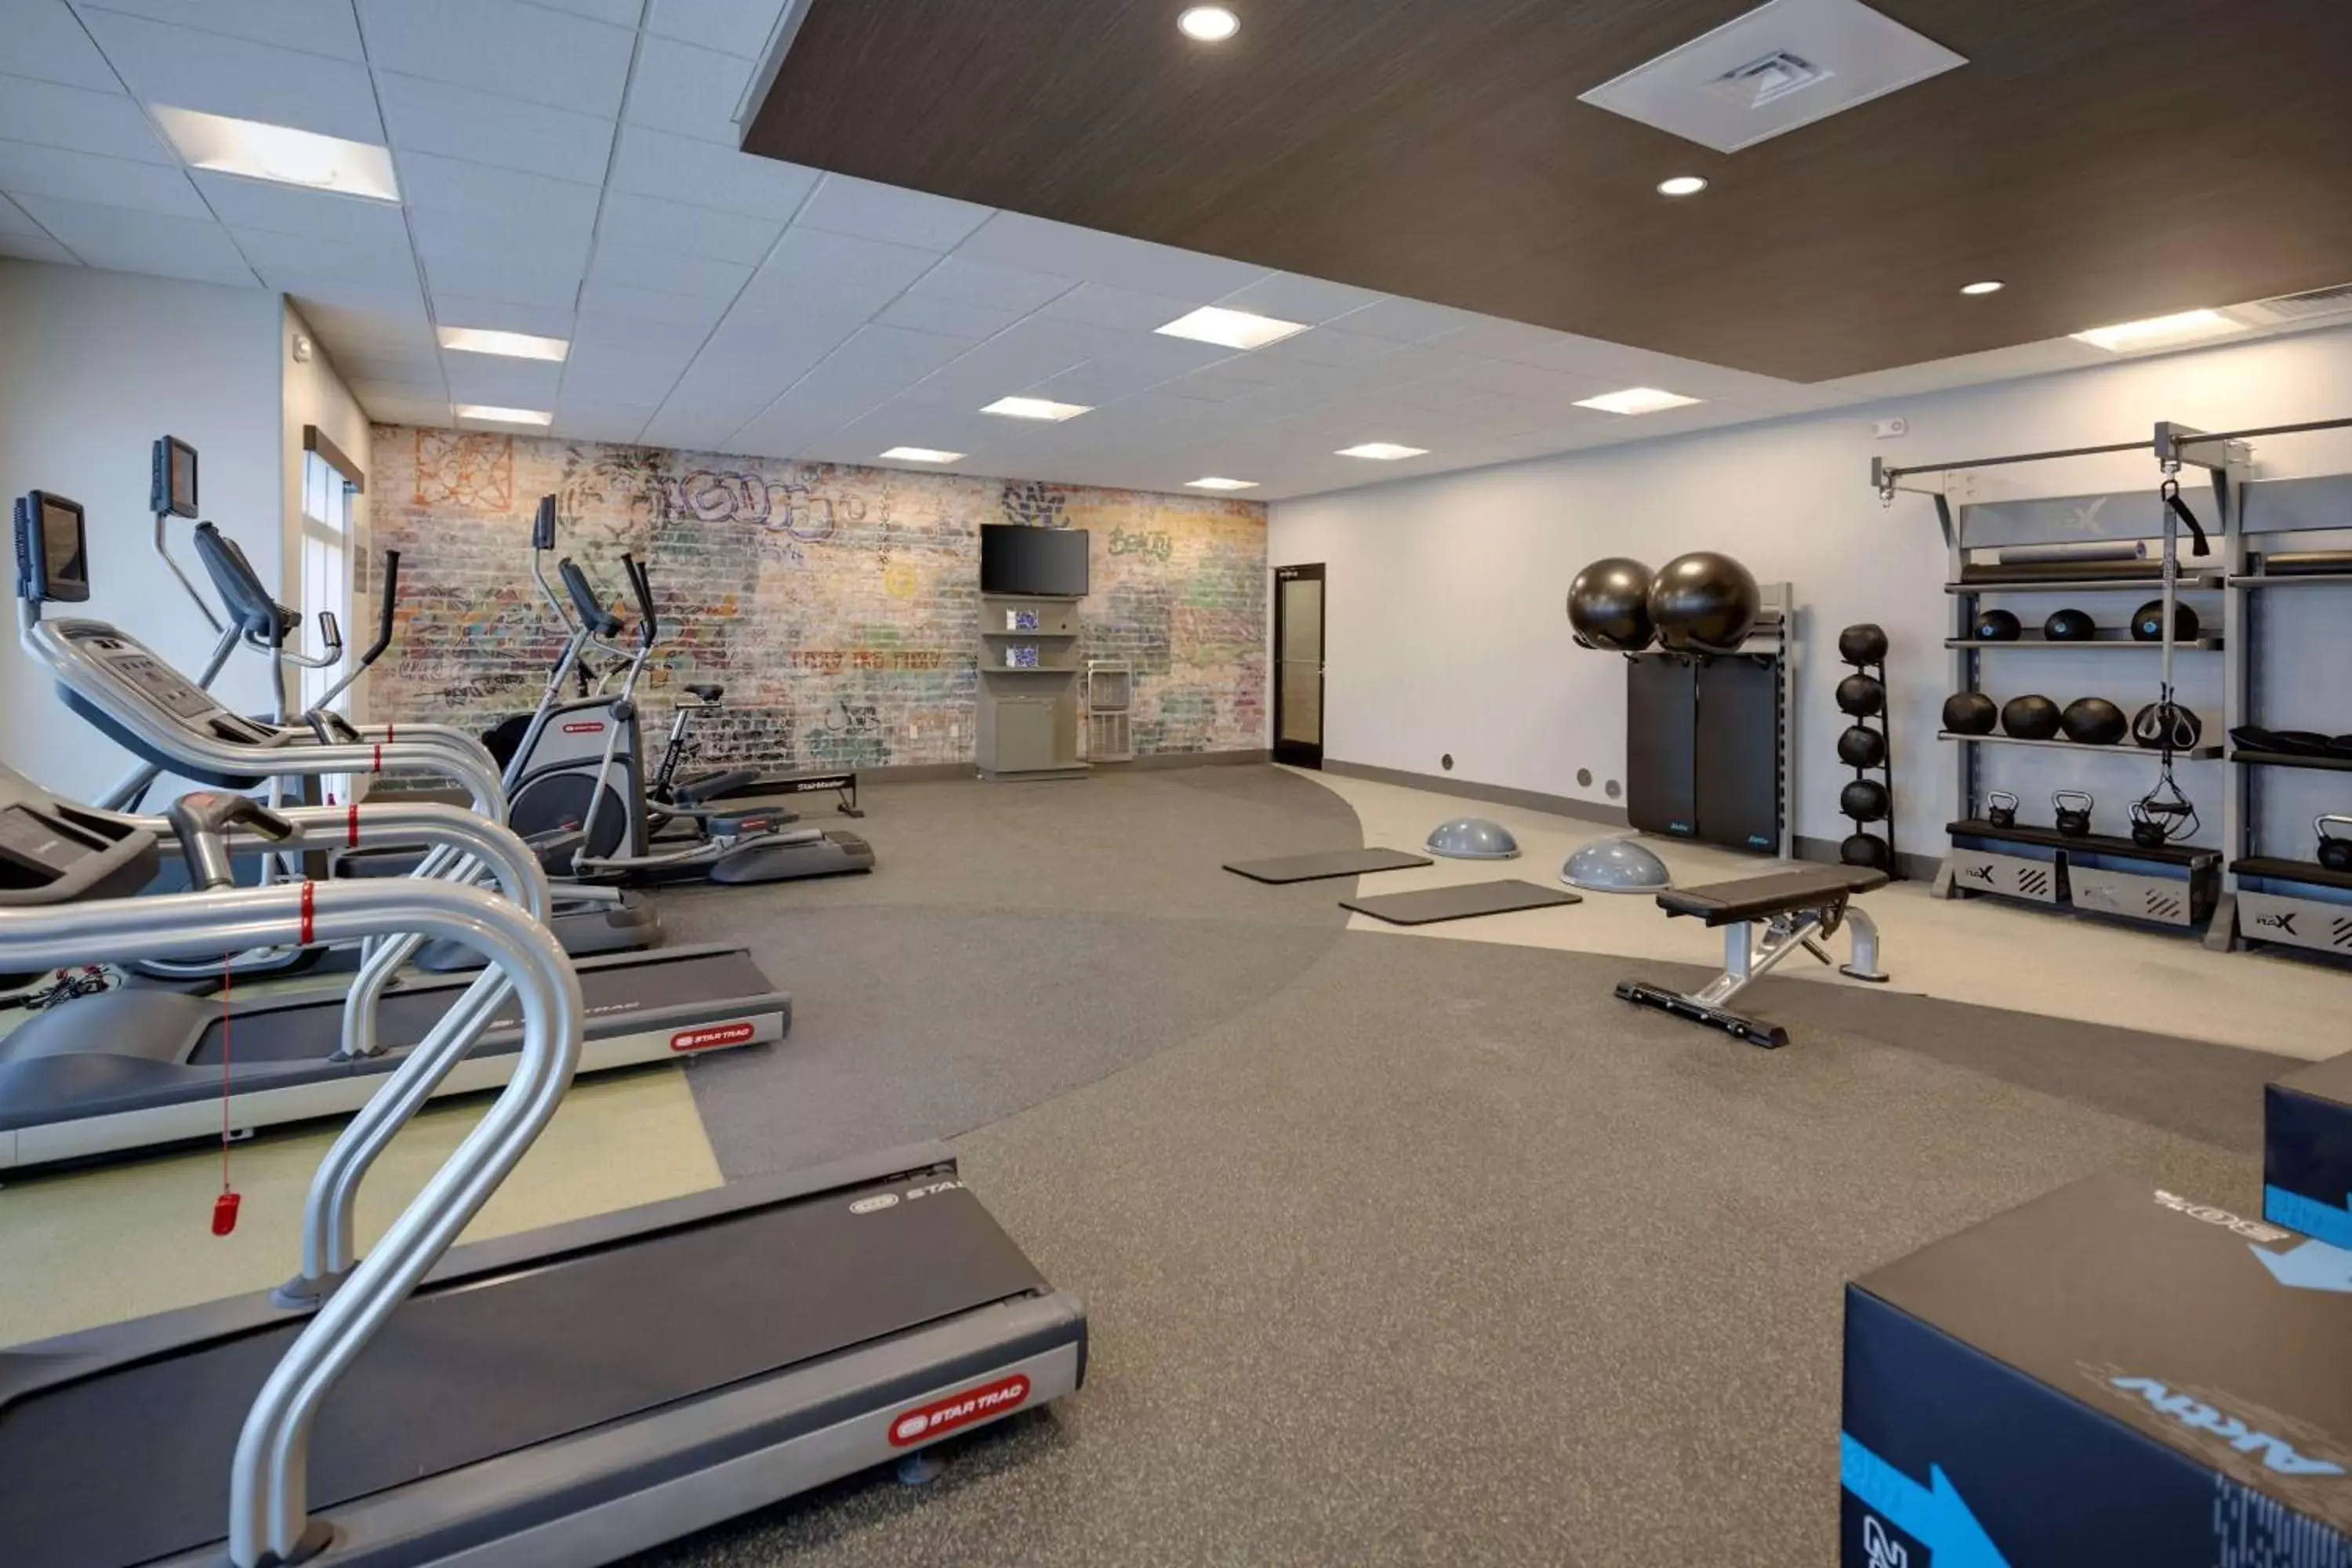 Fitness centre/facilities, Fitness Center/Facilities in Hilton Garden Inn Haymarket